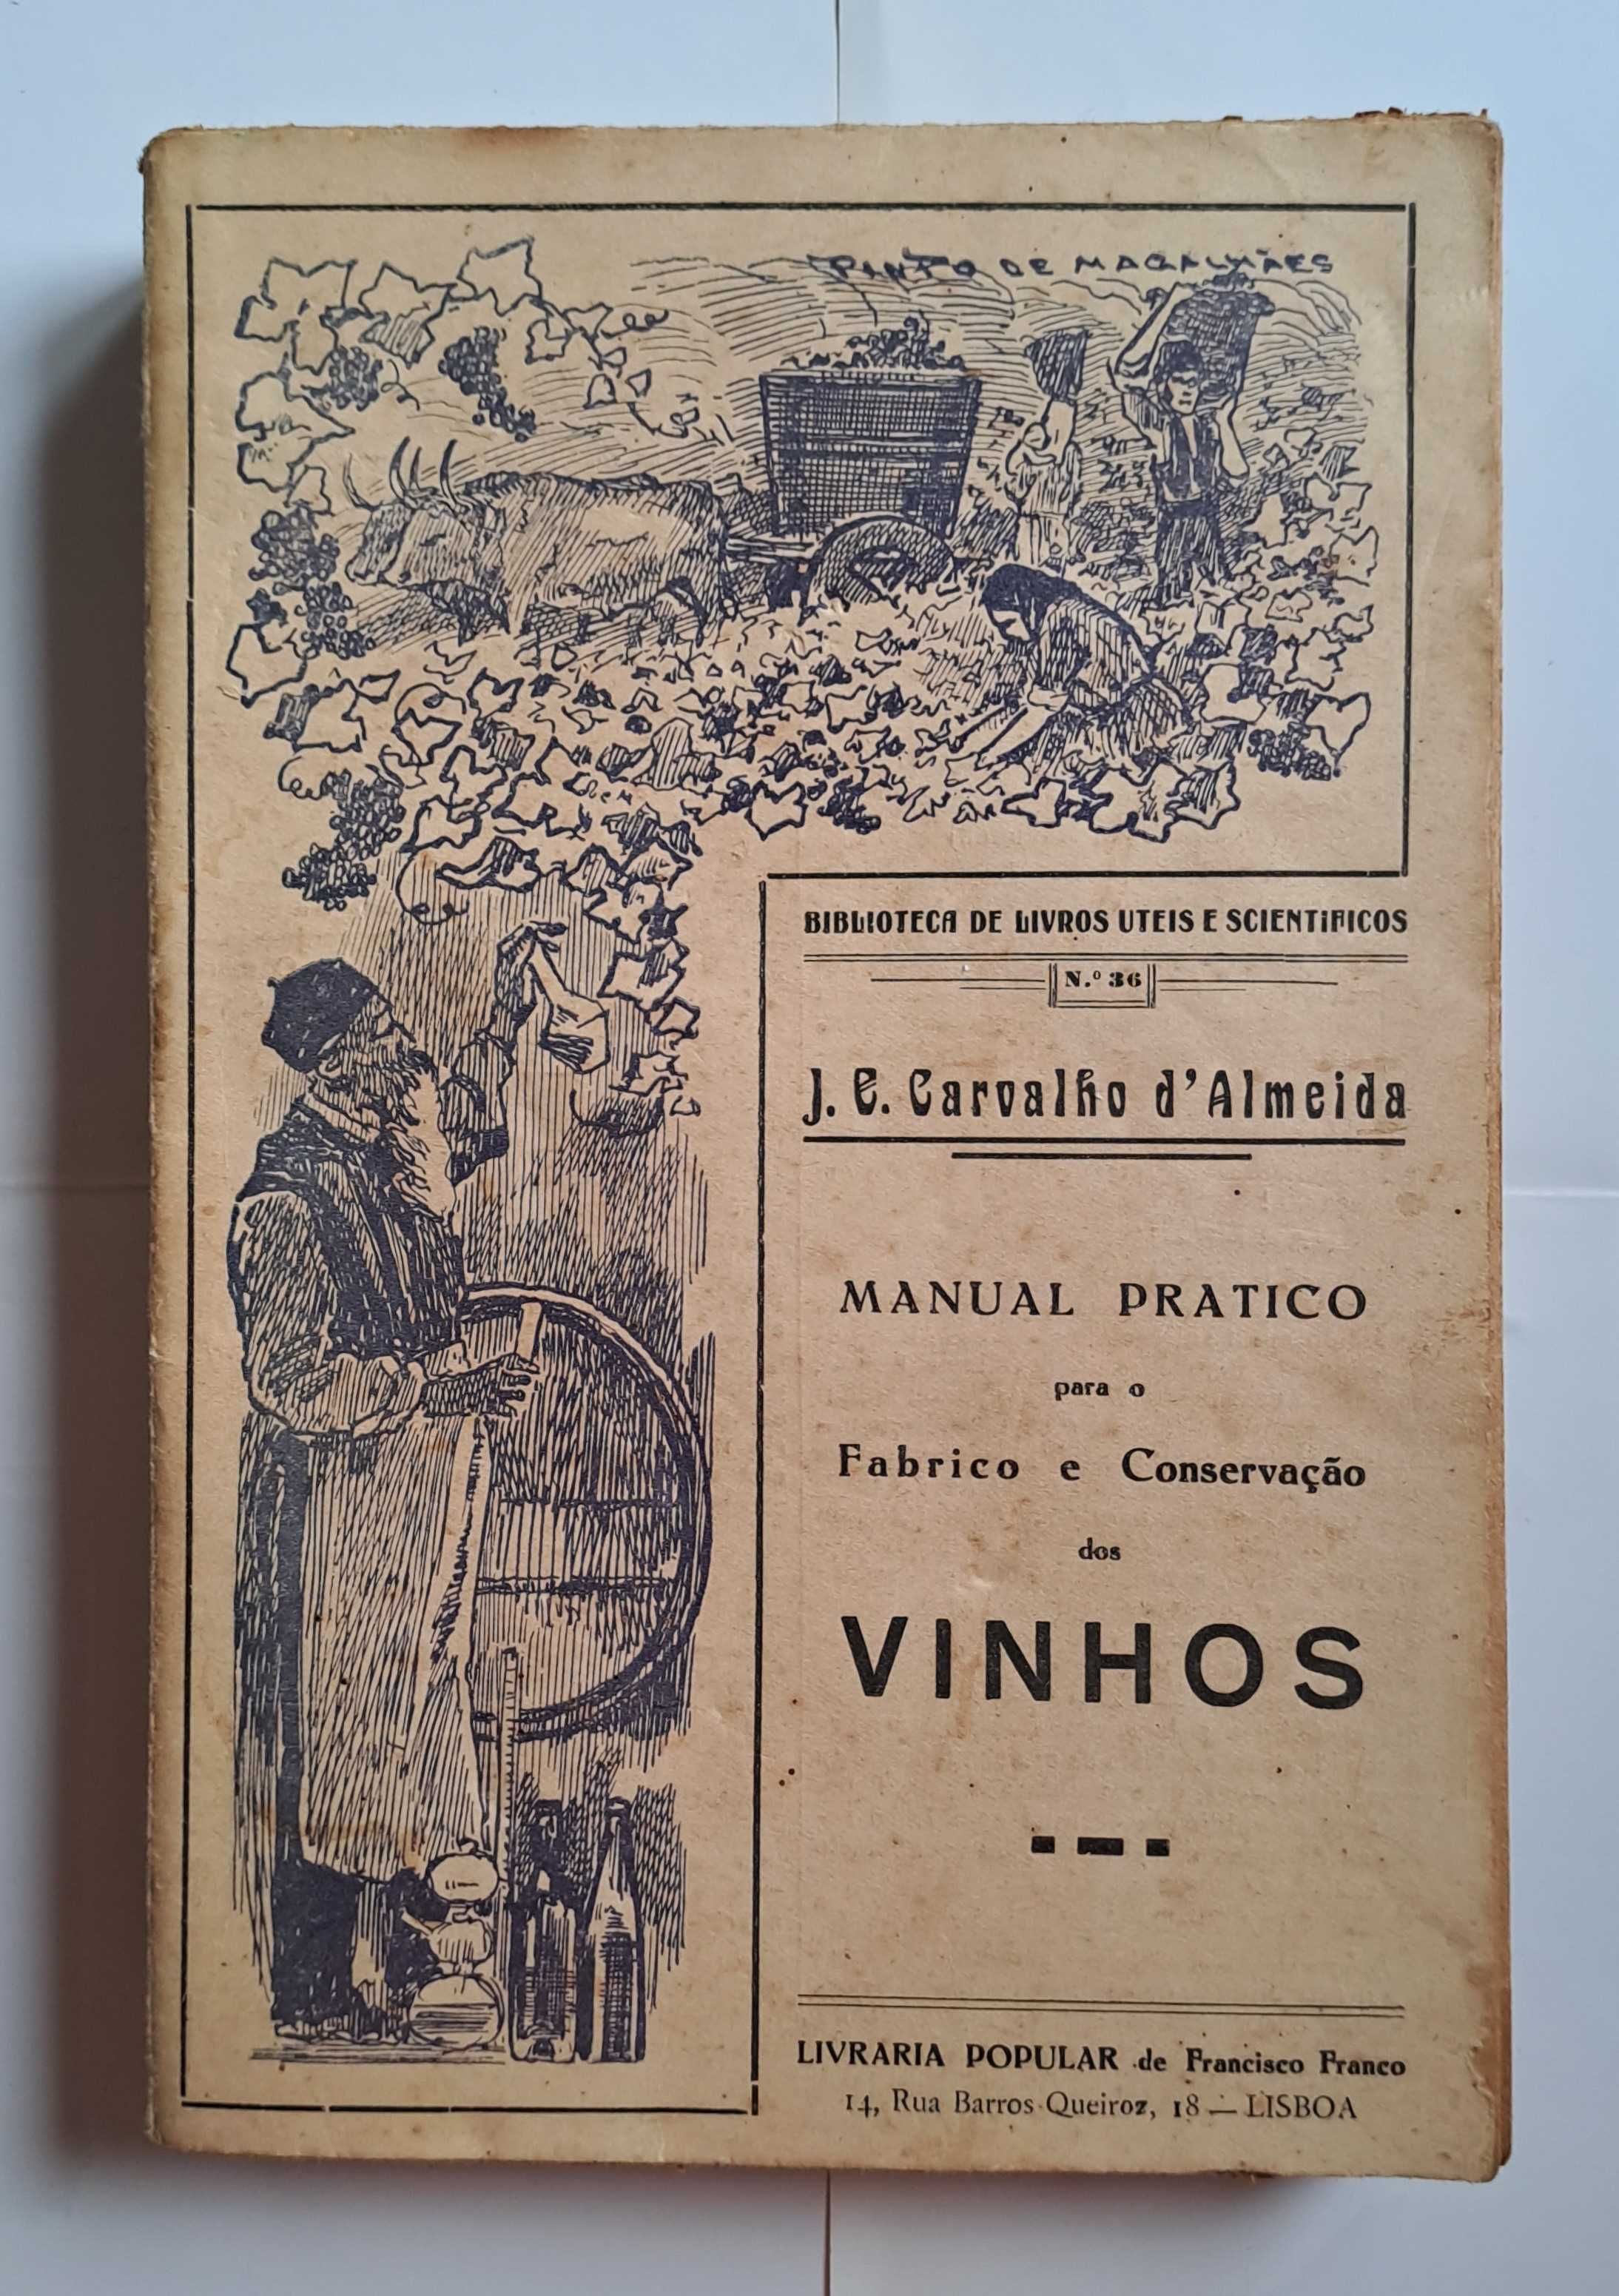 Manual Pratico para o Fabrico e Conservação dos Vinhos